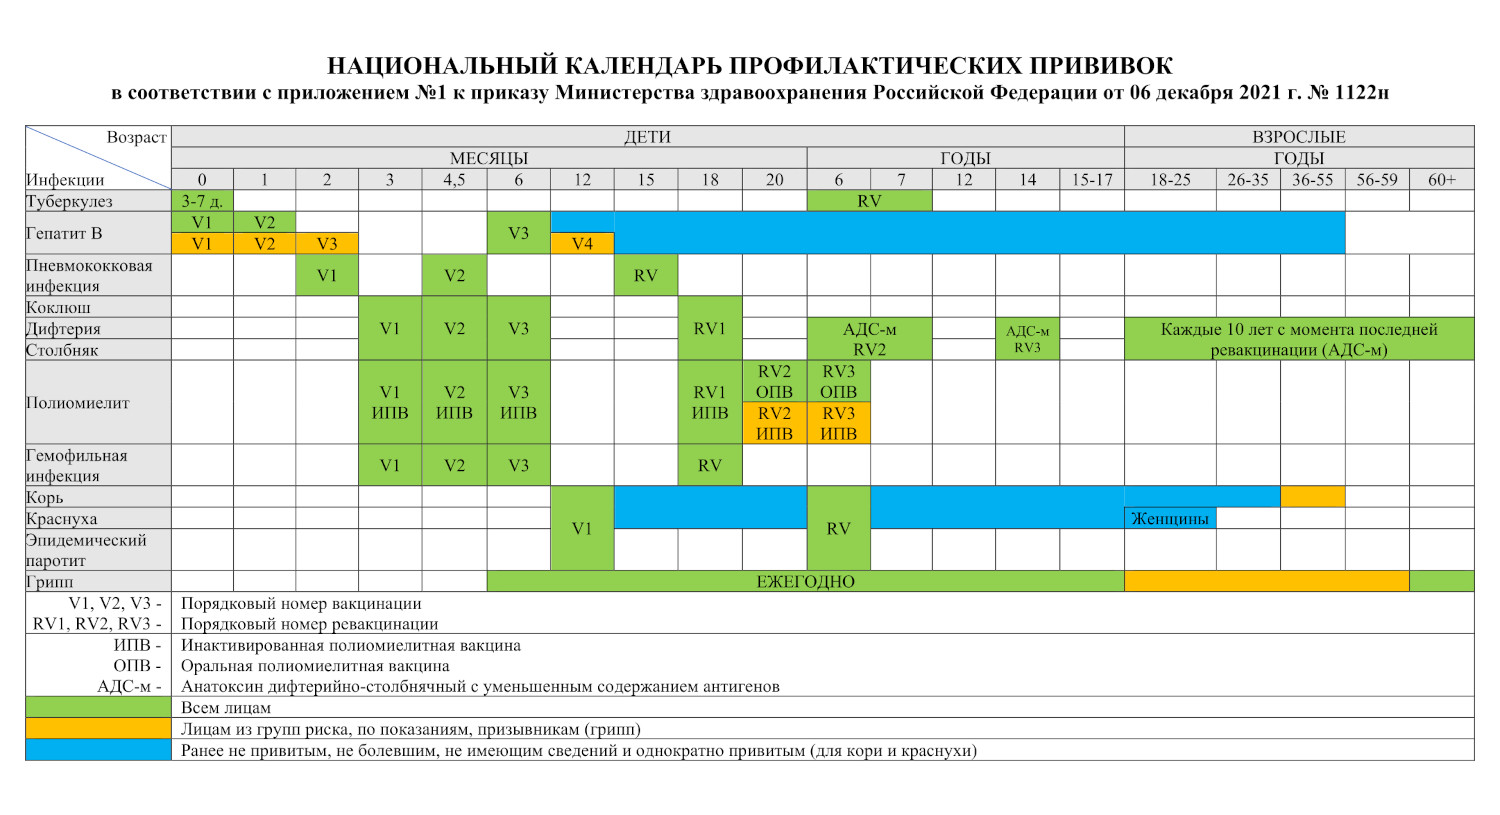 Календарь профилактических прививок | ГНЦ РФ ФГБУ «НМИЦ эндокринологии»  Минздрава России